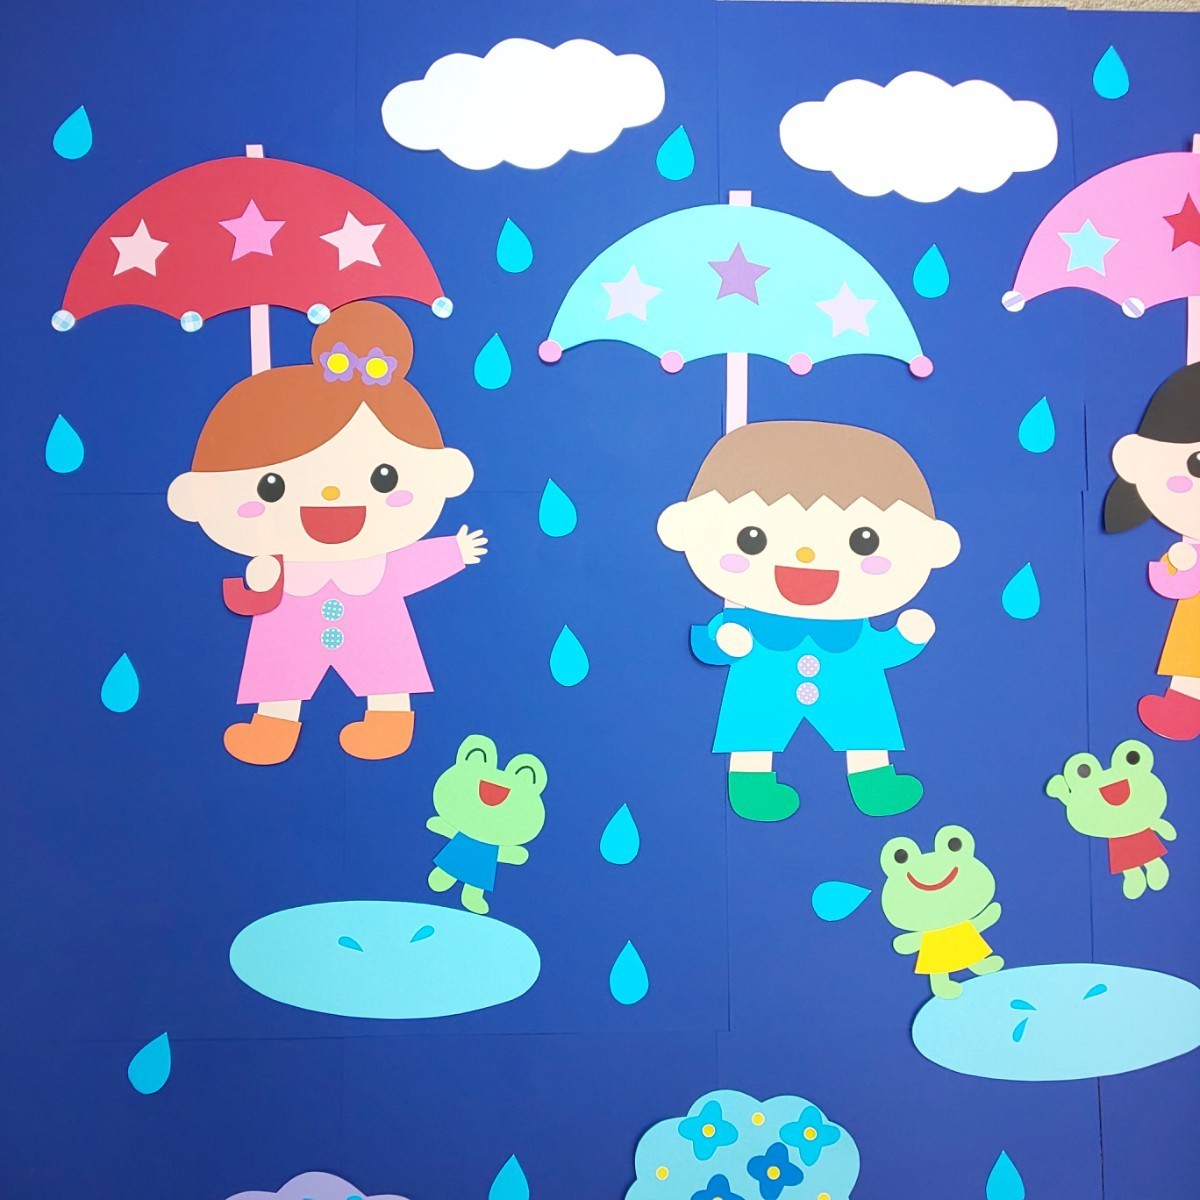 6月 梅雨 雨の日楽しいな 保育園・幼稚園・児童館などの壁面飾り 壁面装飾 ハンドメイド_画像2